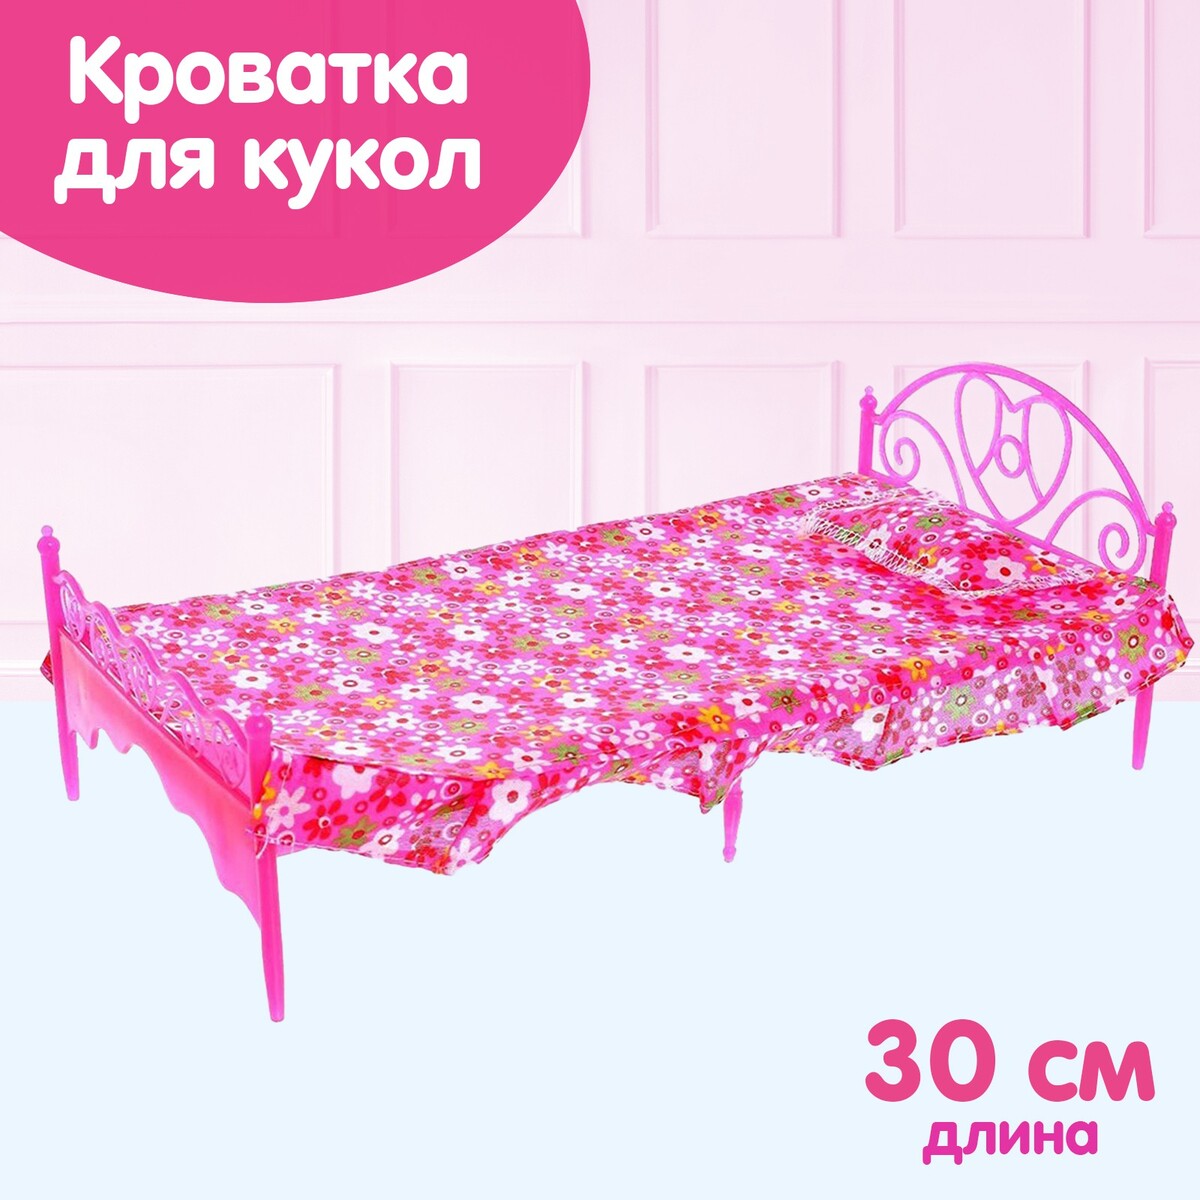 Кроватка для кукол постельное белье для кукол с котами smallstuff